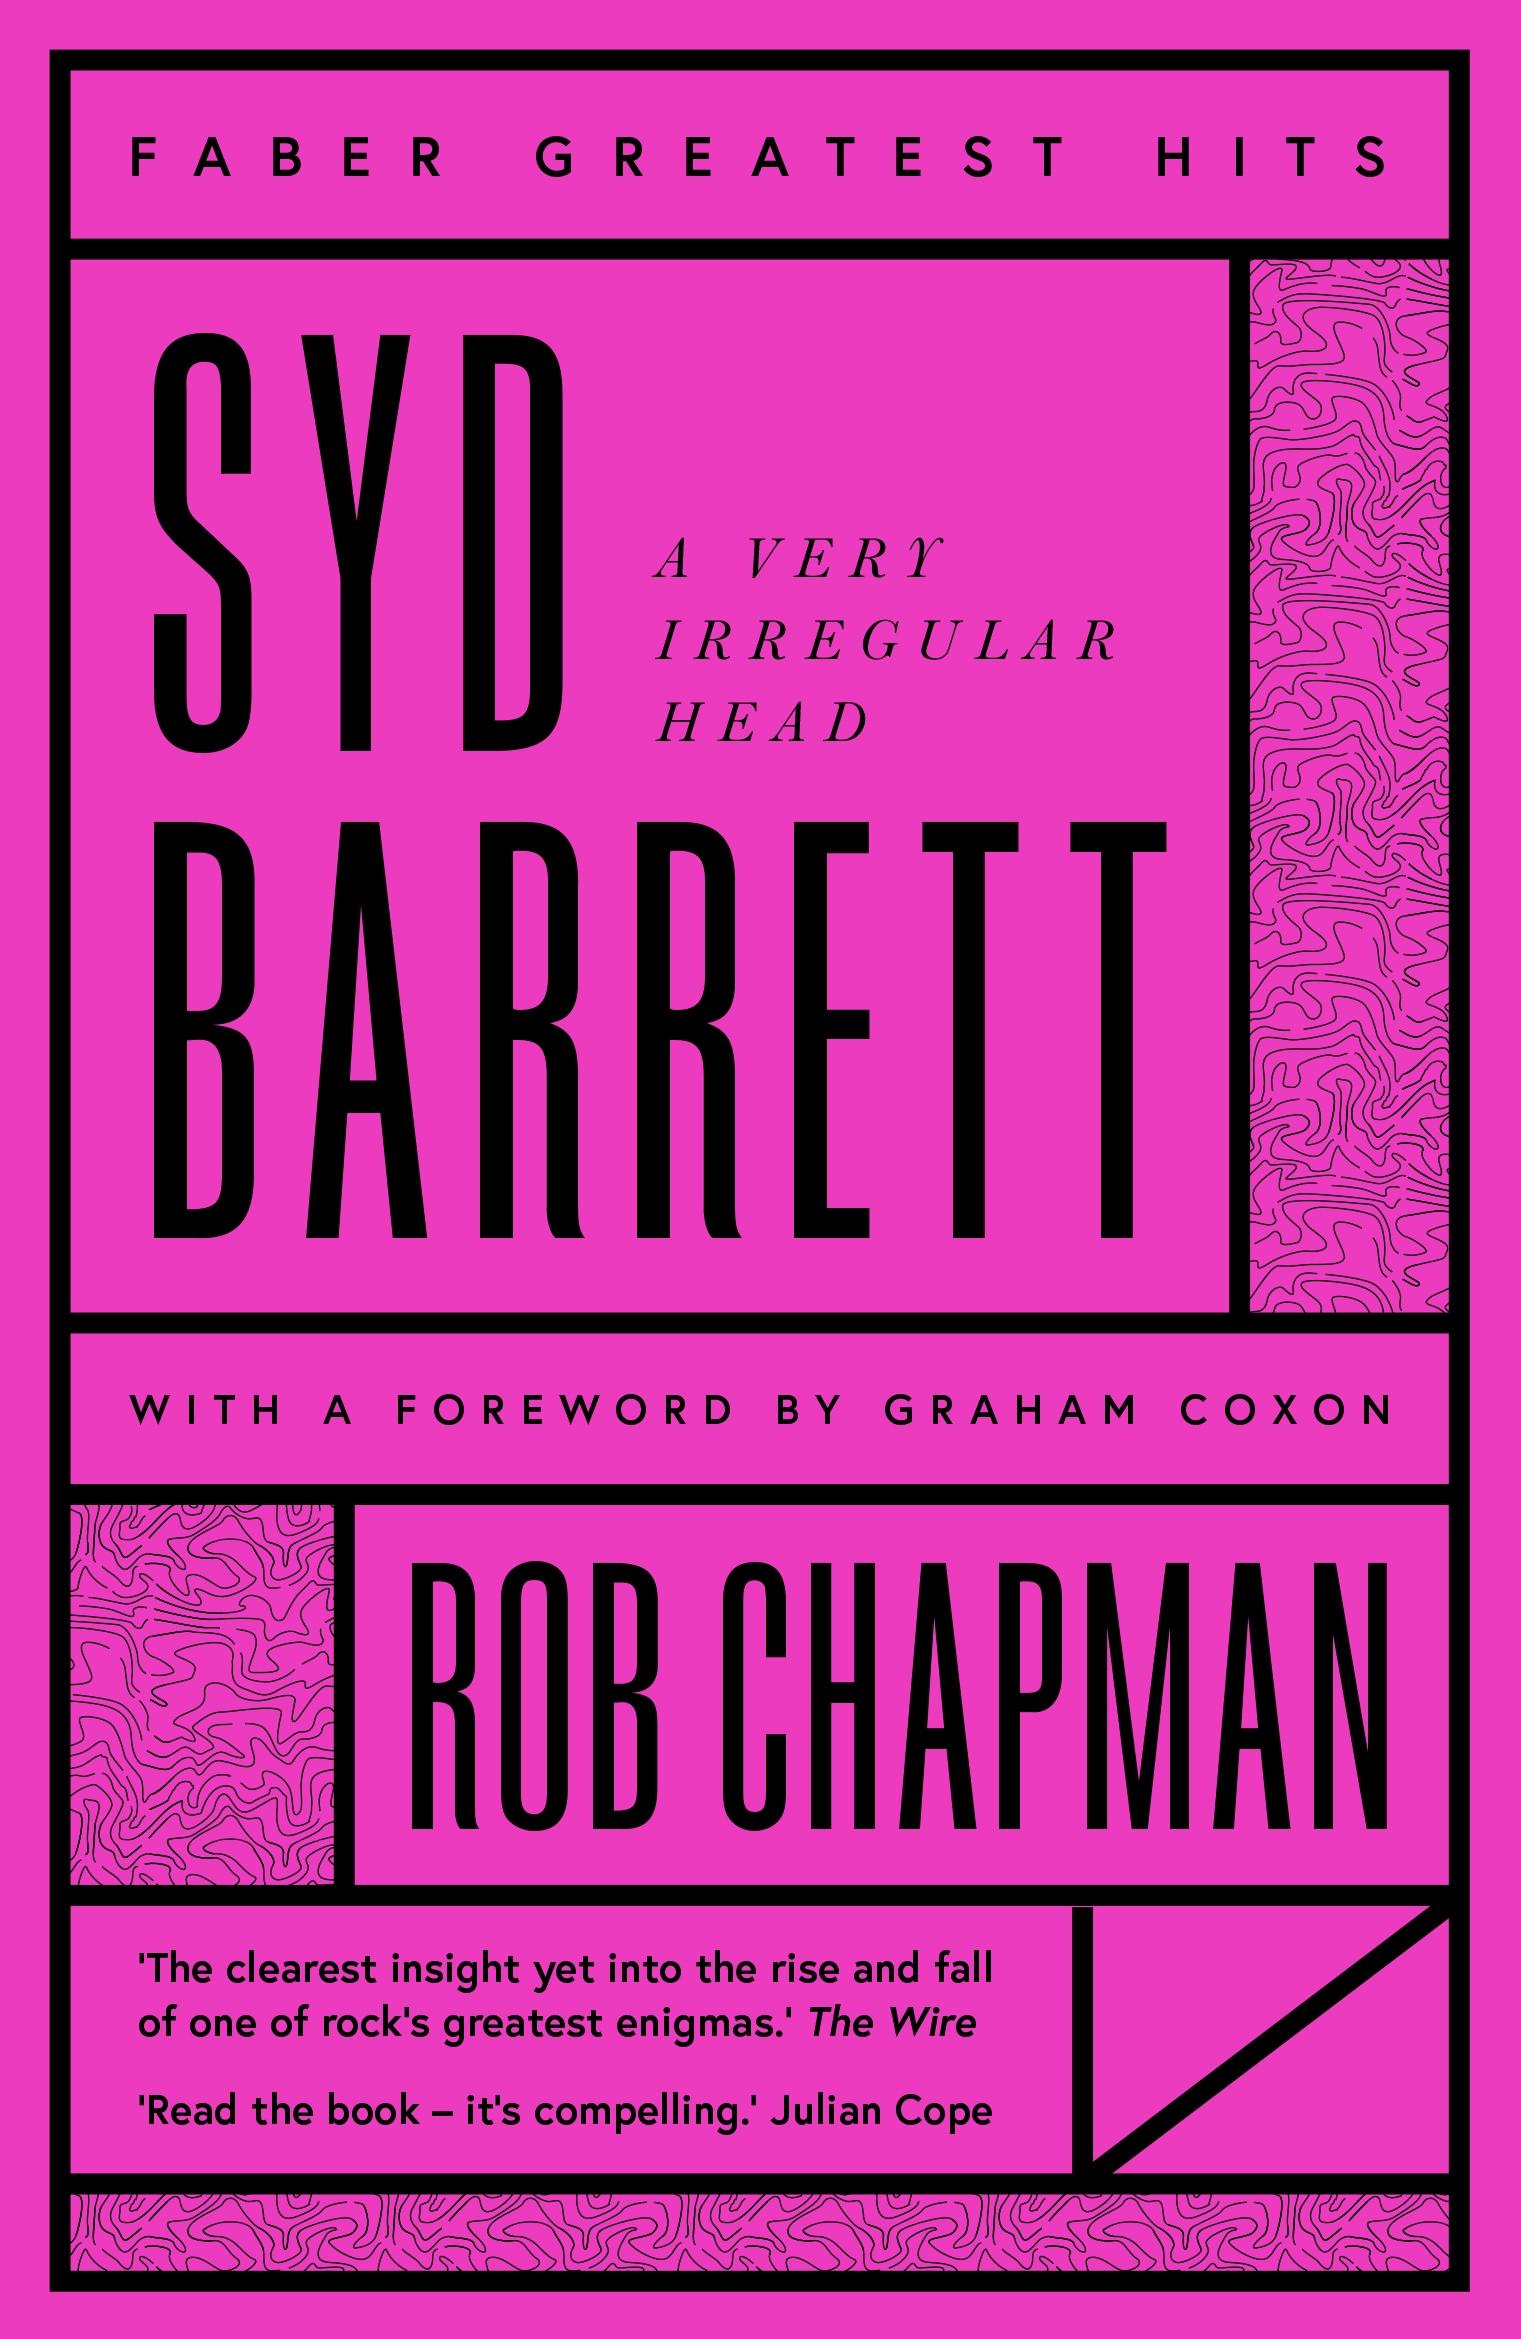 Syd Barrett / A Very Irregular Head / Rob Chapman / Taschenbuch / Kartoniert / Broschiert / Englisch / 2020 / Faber & Faber / EAN 9780571359783 - Chapman, Rob